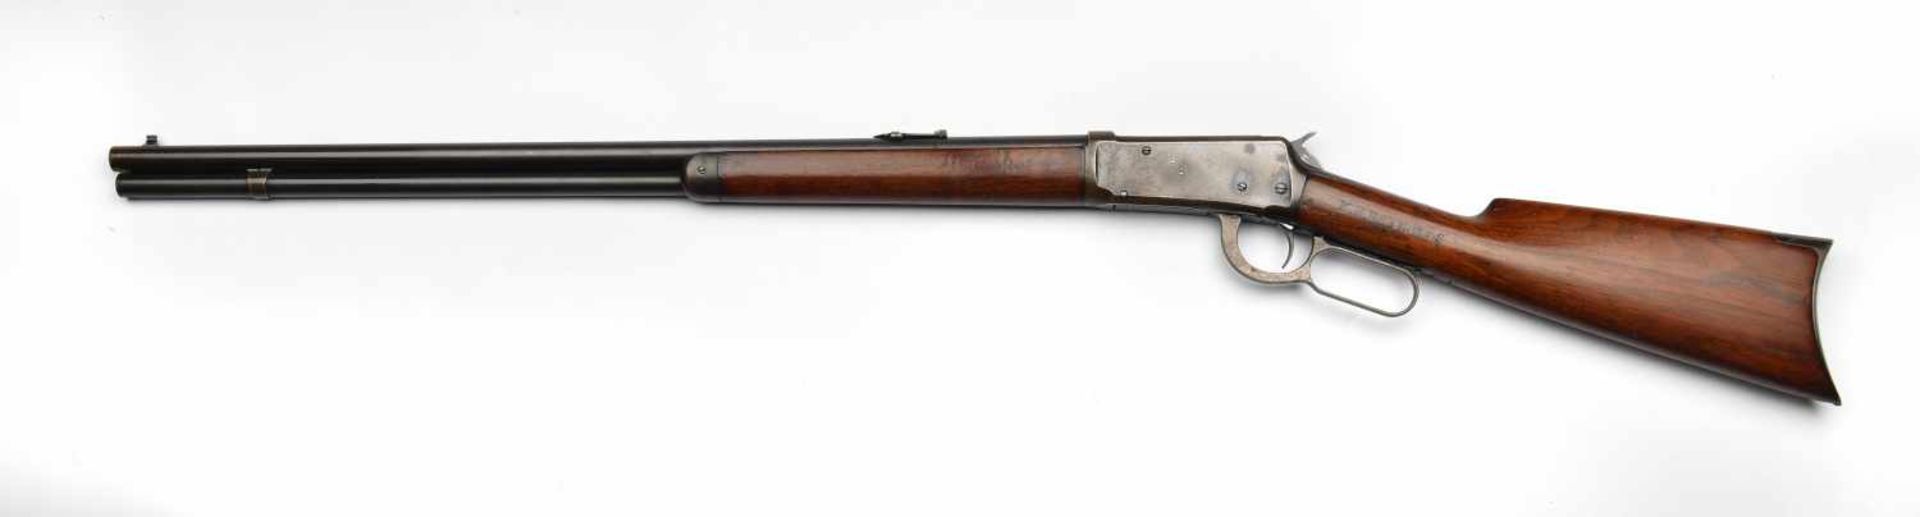 Winchester Riffle modèle 1894 . Calibre 38-55, canon rond, bronzé noir éclairci et tournant aux «